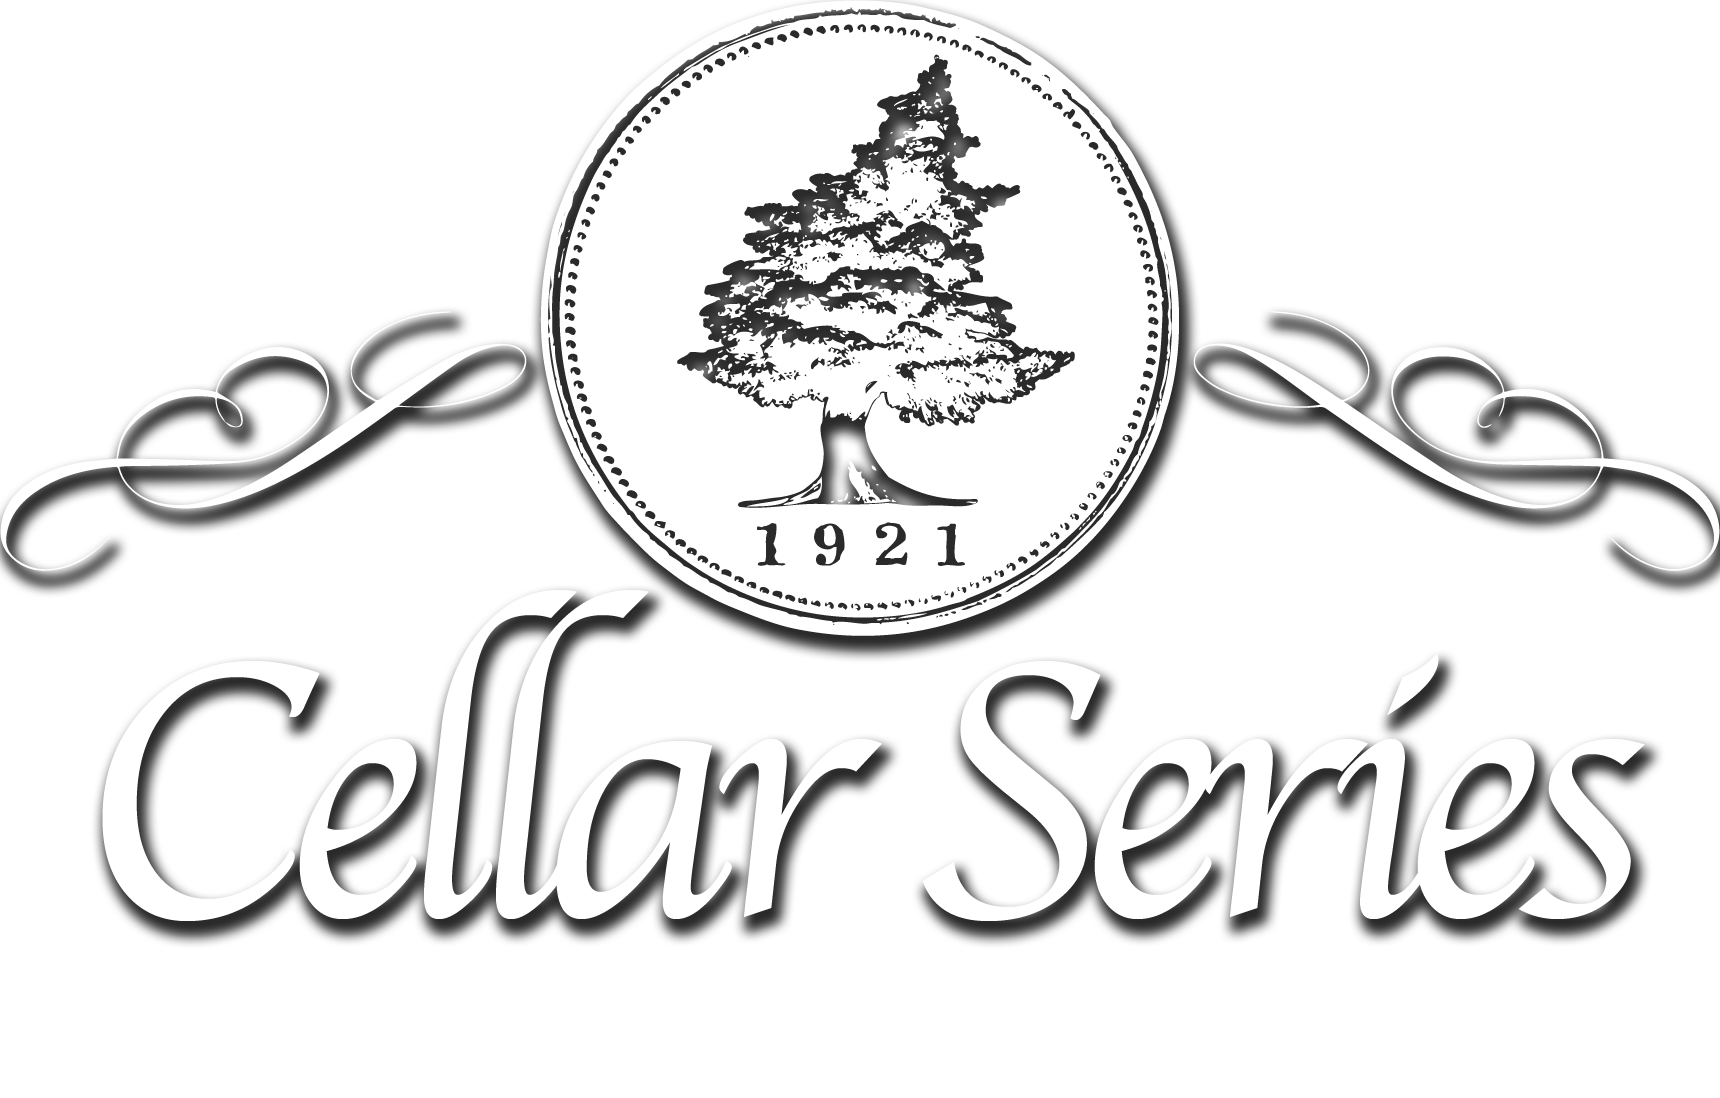 Big Cedar Cellar Series